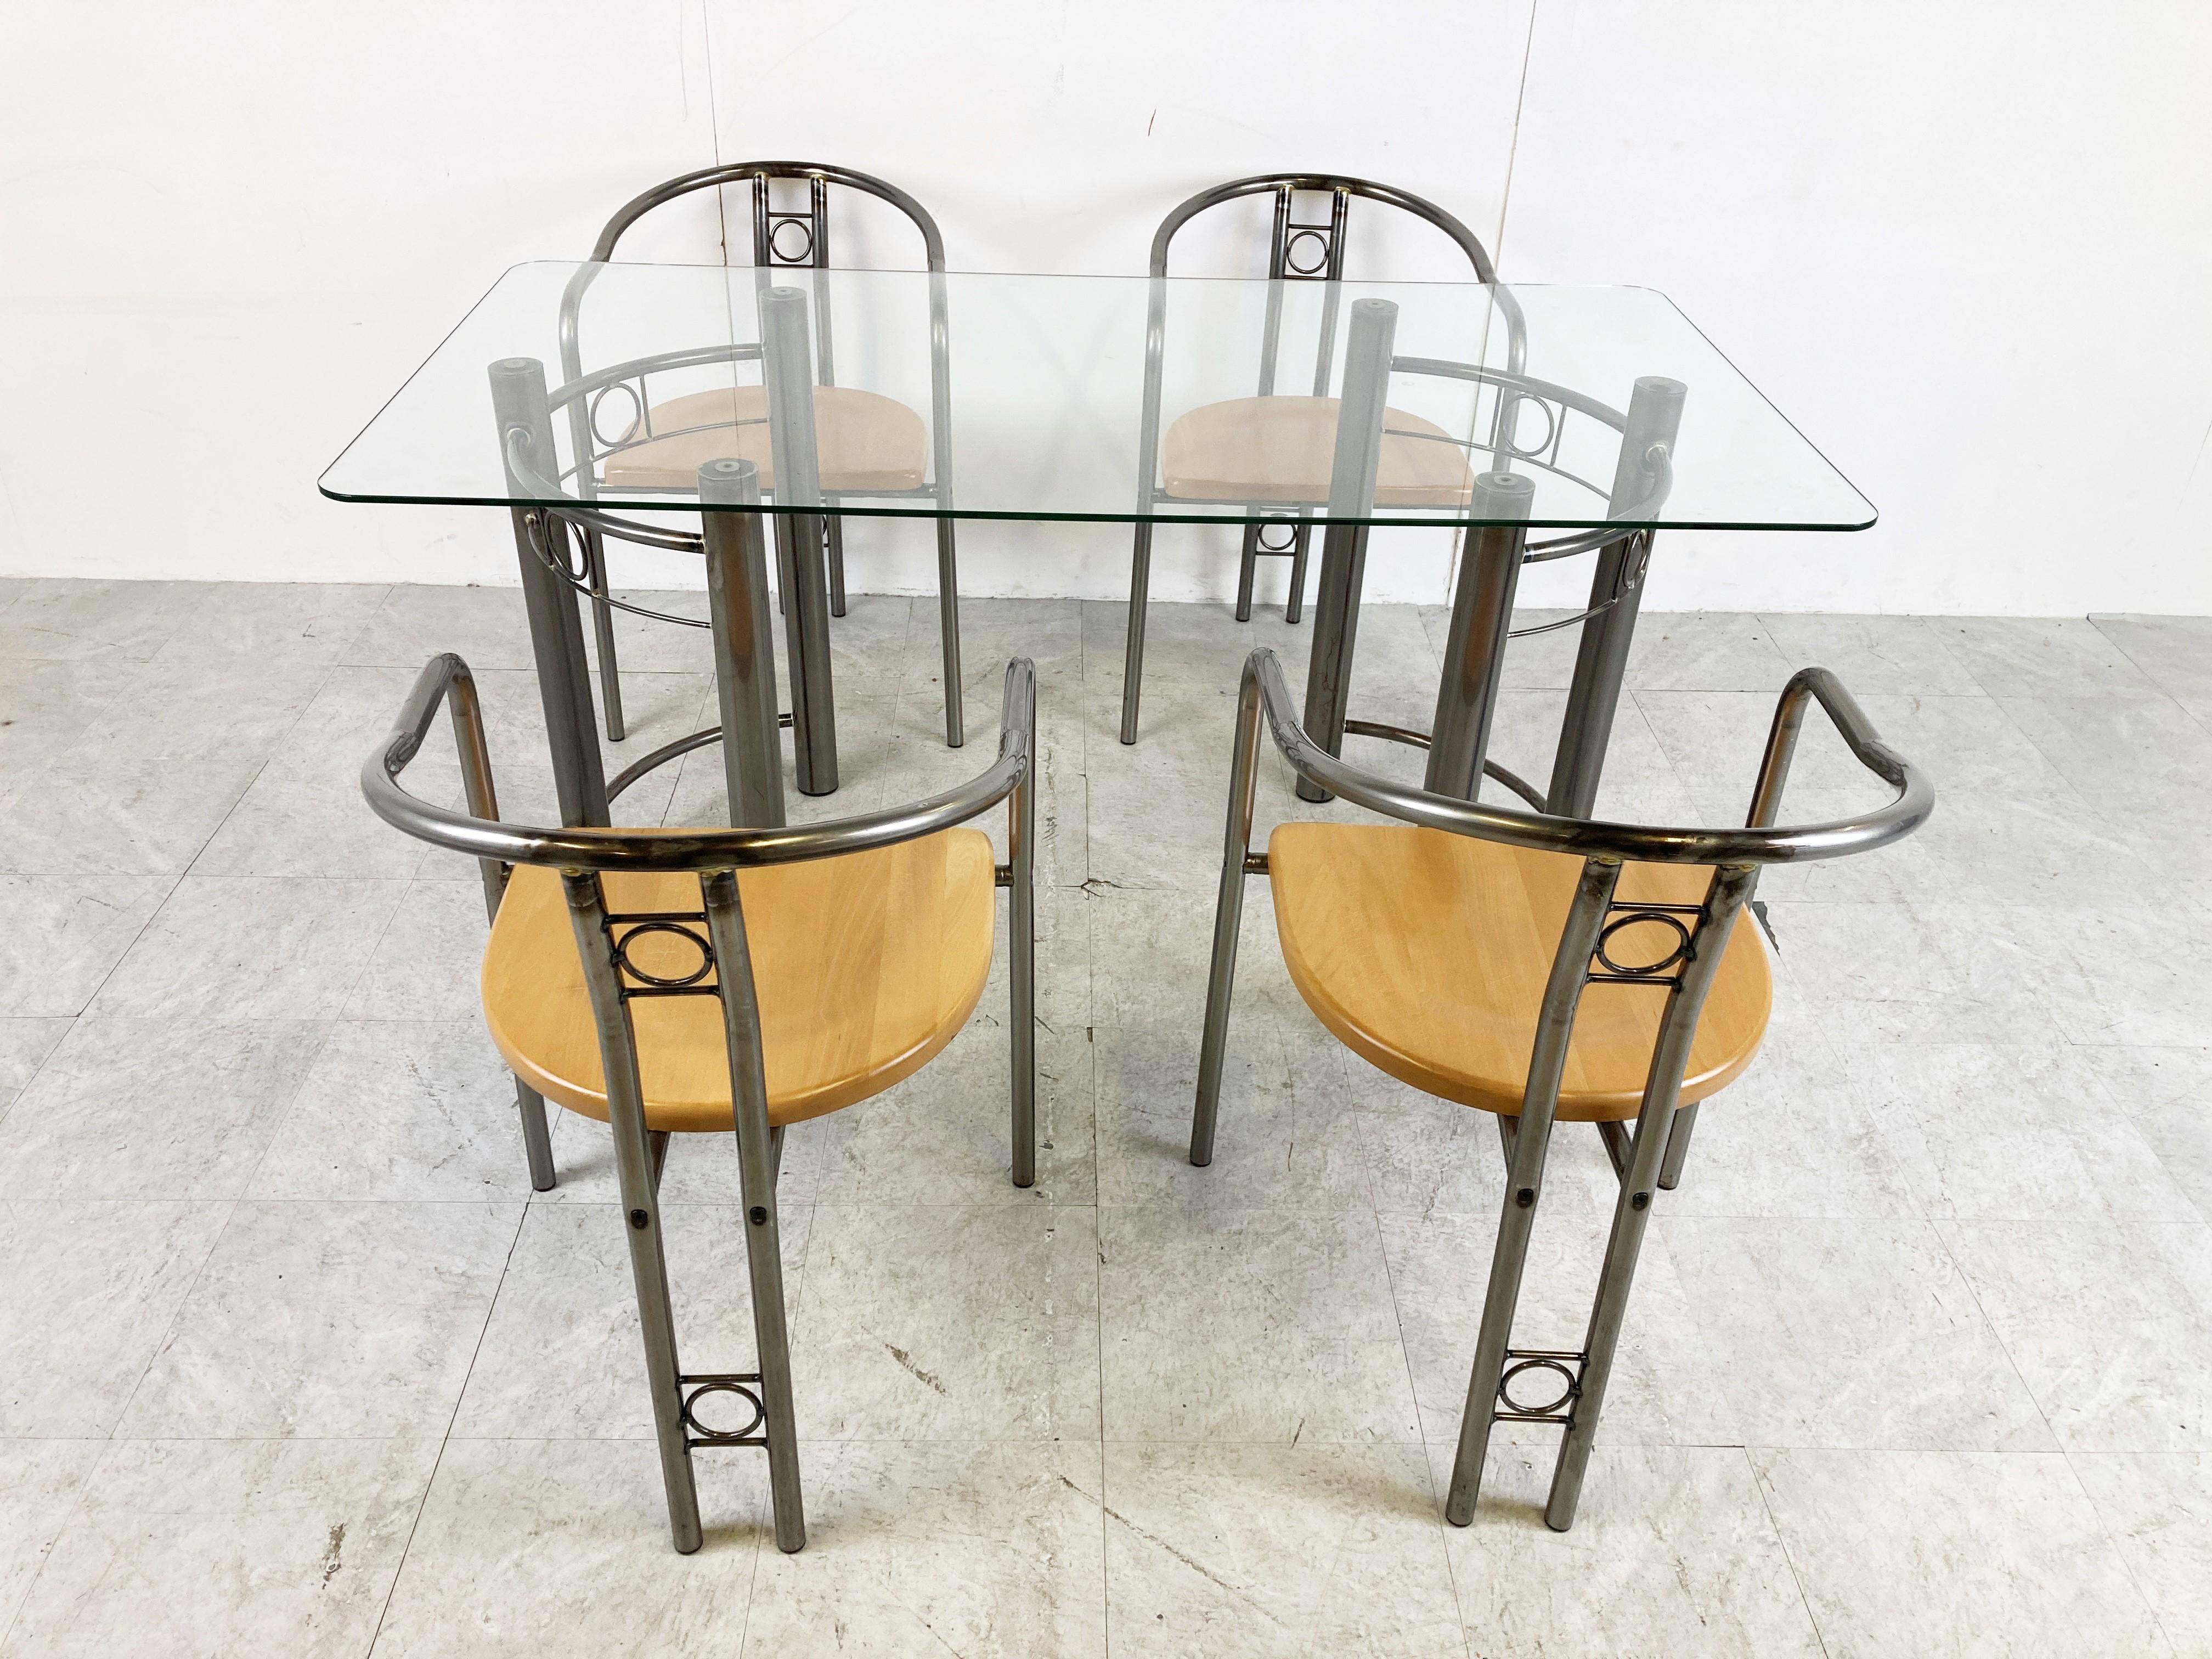 Chaises de salle à manger vintage faites sur mesure avec accoudoirs et table de salle à manger avec un plateau en verre transparent.

Les chaises ont un siège en bois.

Ensemble de salle à manger post-moderne magnifiquement fabriqué.

Années 1980 -